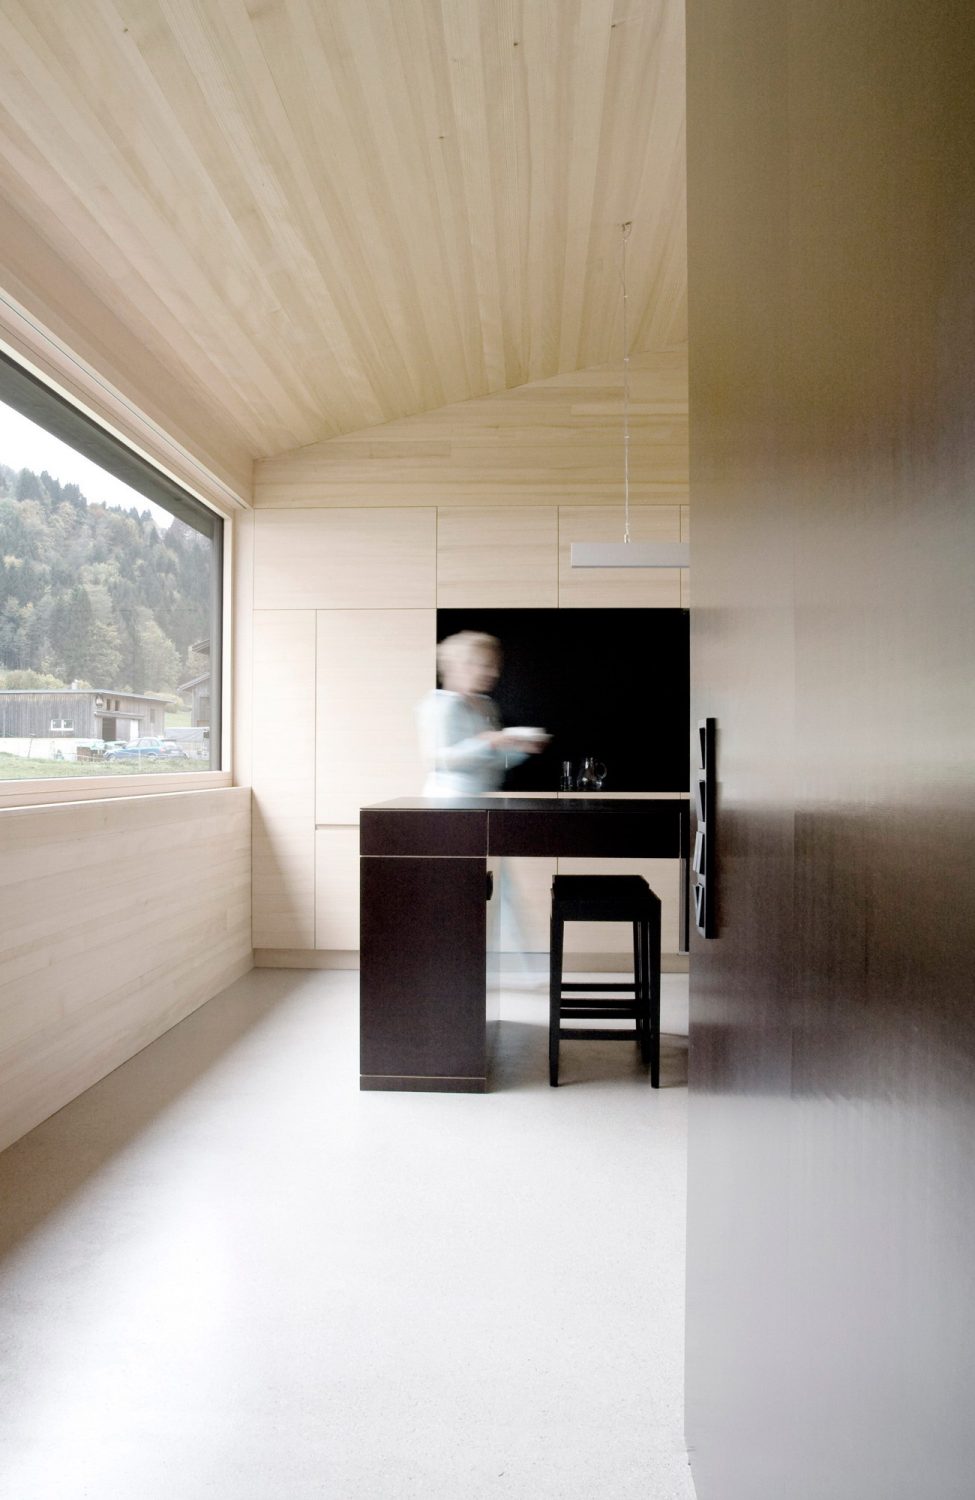 House for Gudrun by Innauer-Matt Architekten